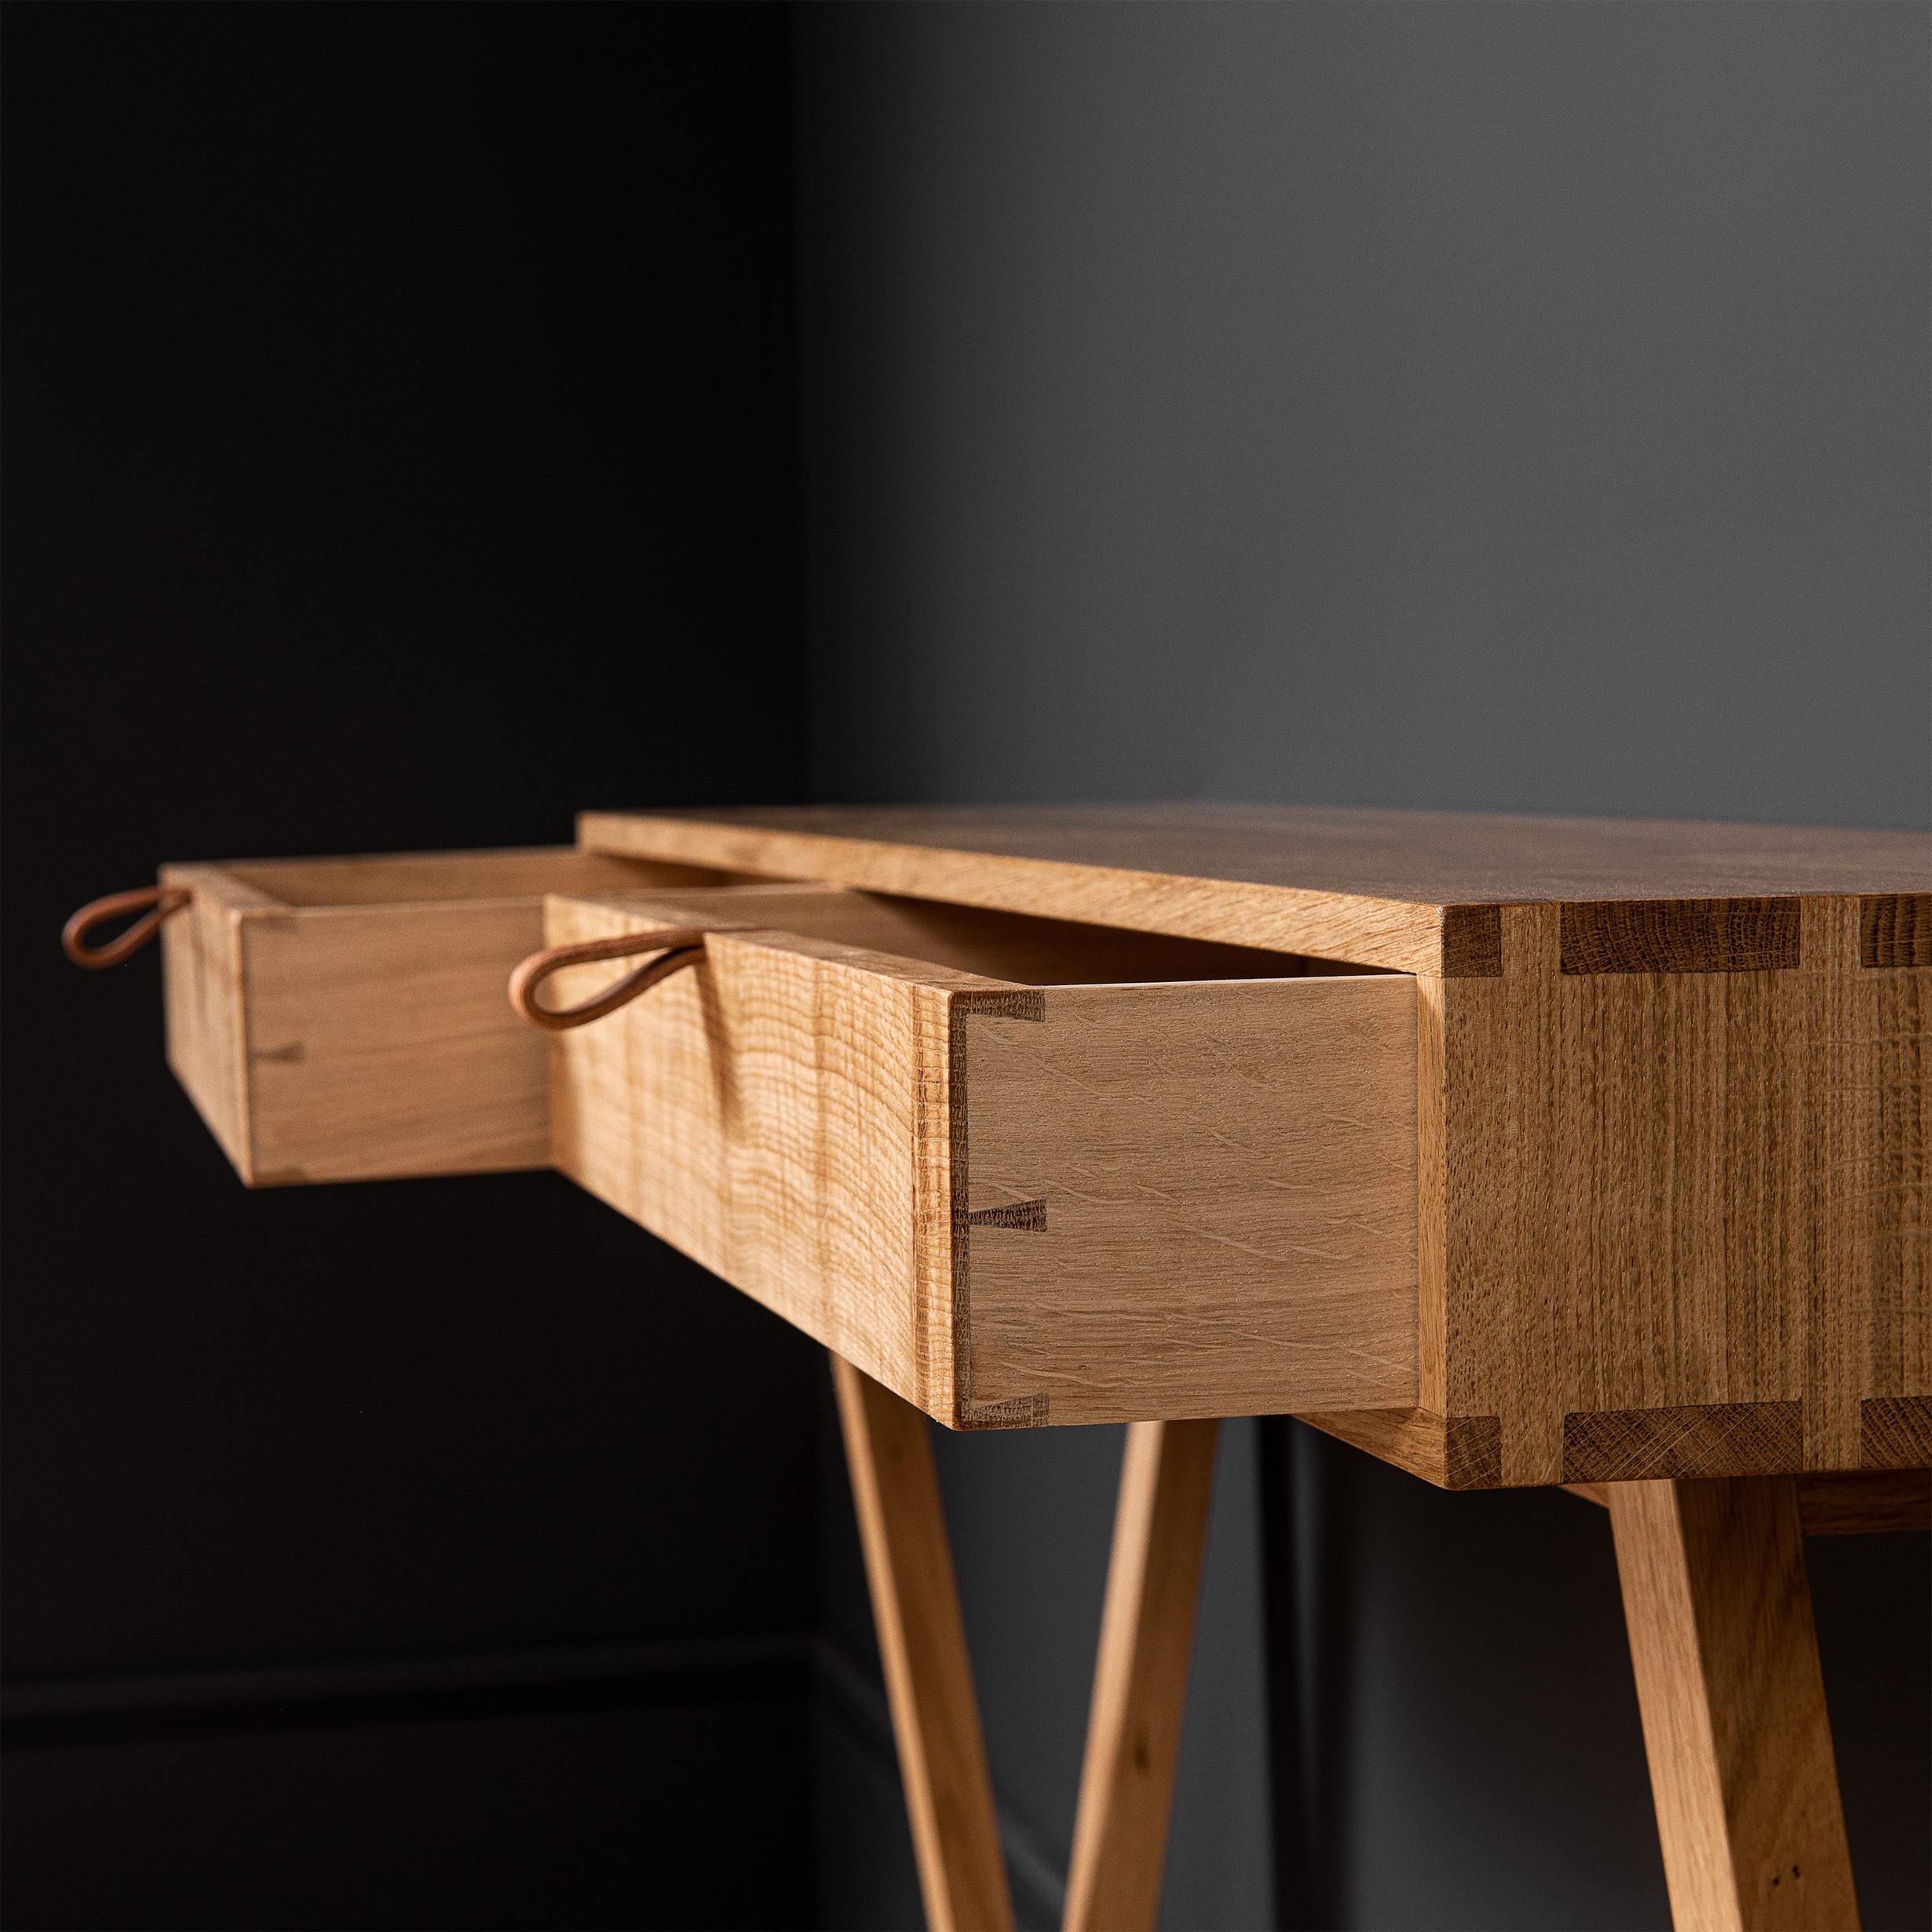 Modernistischer Konsolentisch aus Eichenholz mit Schubladen, entworfen und hergestellt in England unter Verwendung traditioneller Möbelherstellungstechniken. Vollständig handgefertigt aus feinstem englischen Eichenholz, das vollständig gesägt wurde.